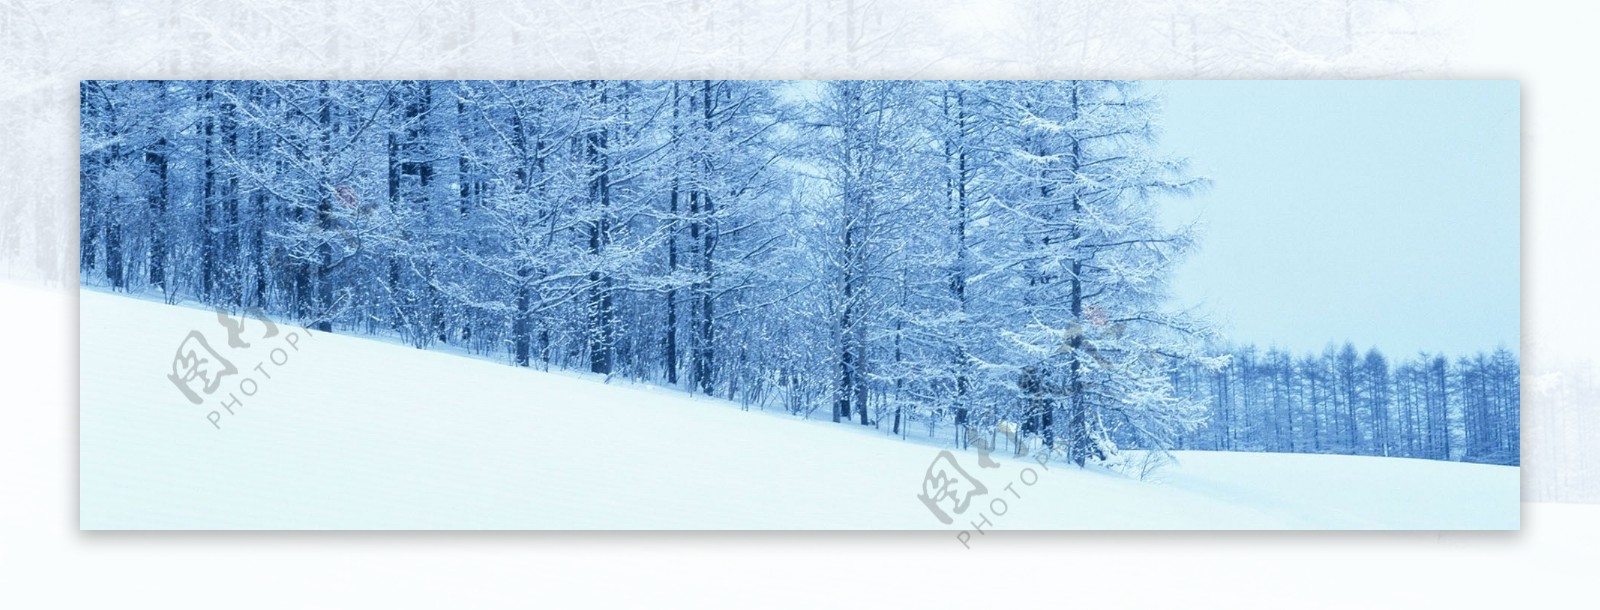 雪景海报背景素材54